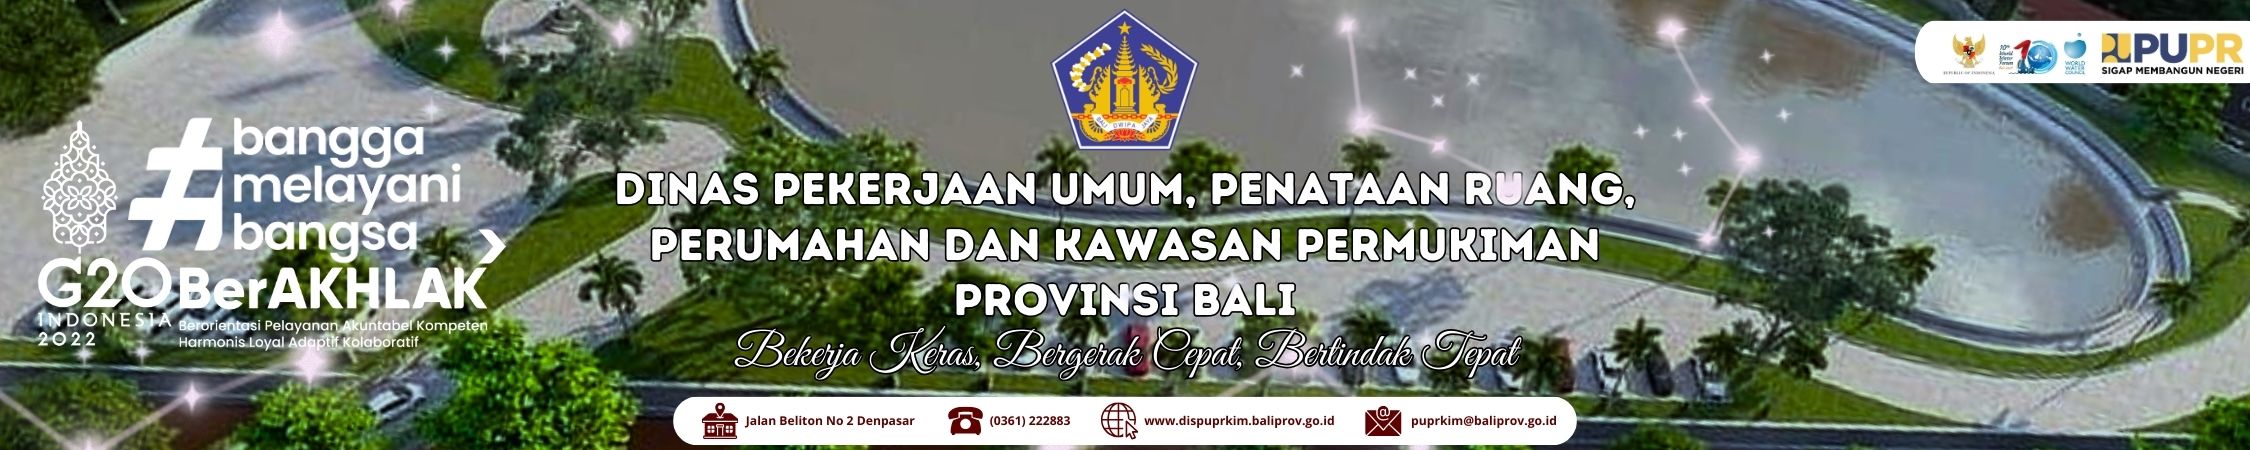 Dinas Pekerjaan Umum, Penataan Ruang, Perumahan dan Kawasan Permukiman Pemerintah Provinsi Bali